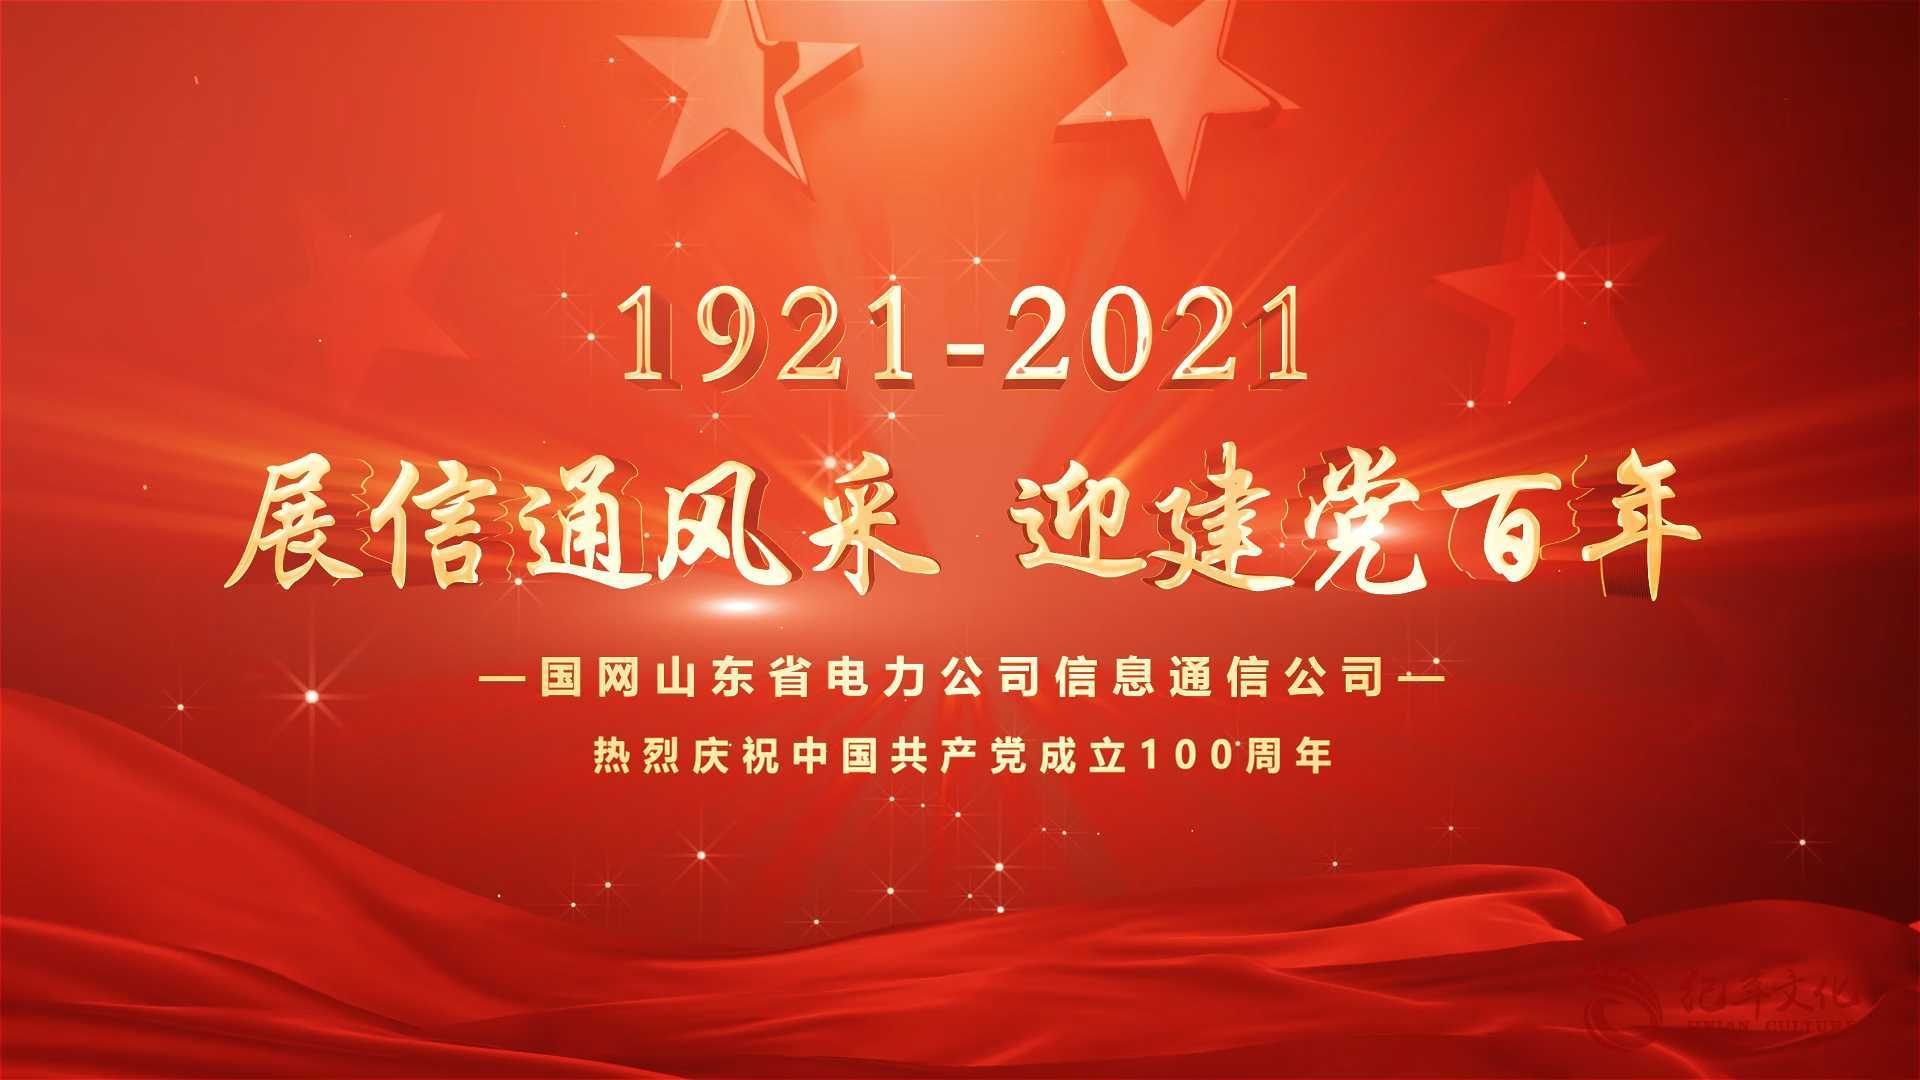 我们走在大路上-国网山东信息通信公司庆祝中国共产党成立100周年